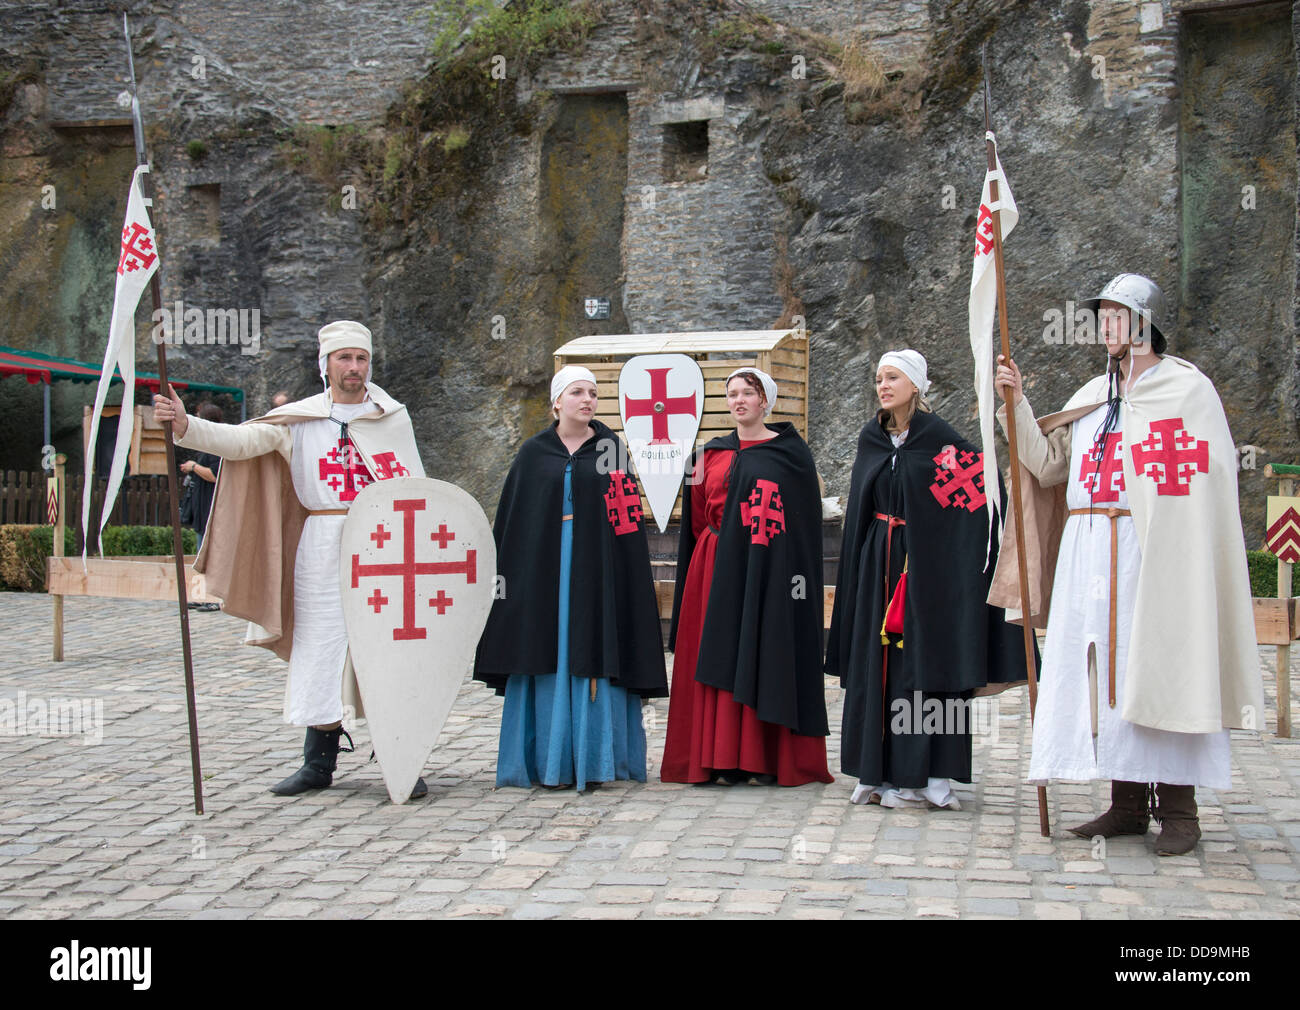 Gente vestida con ropa medieval en cubitos como caballero y princesa de los juegos medievales anual Foto de stock